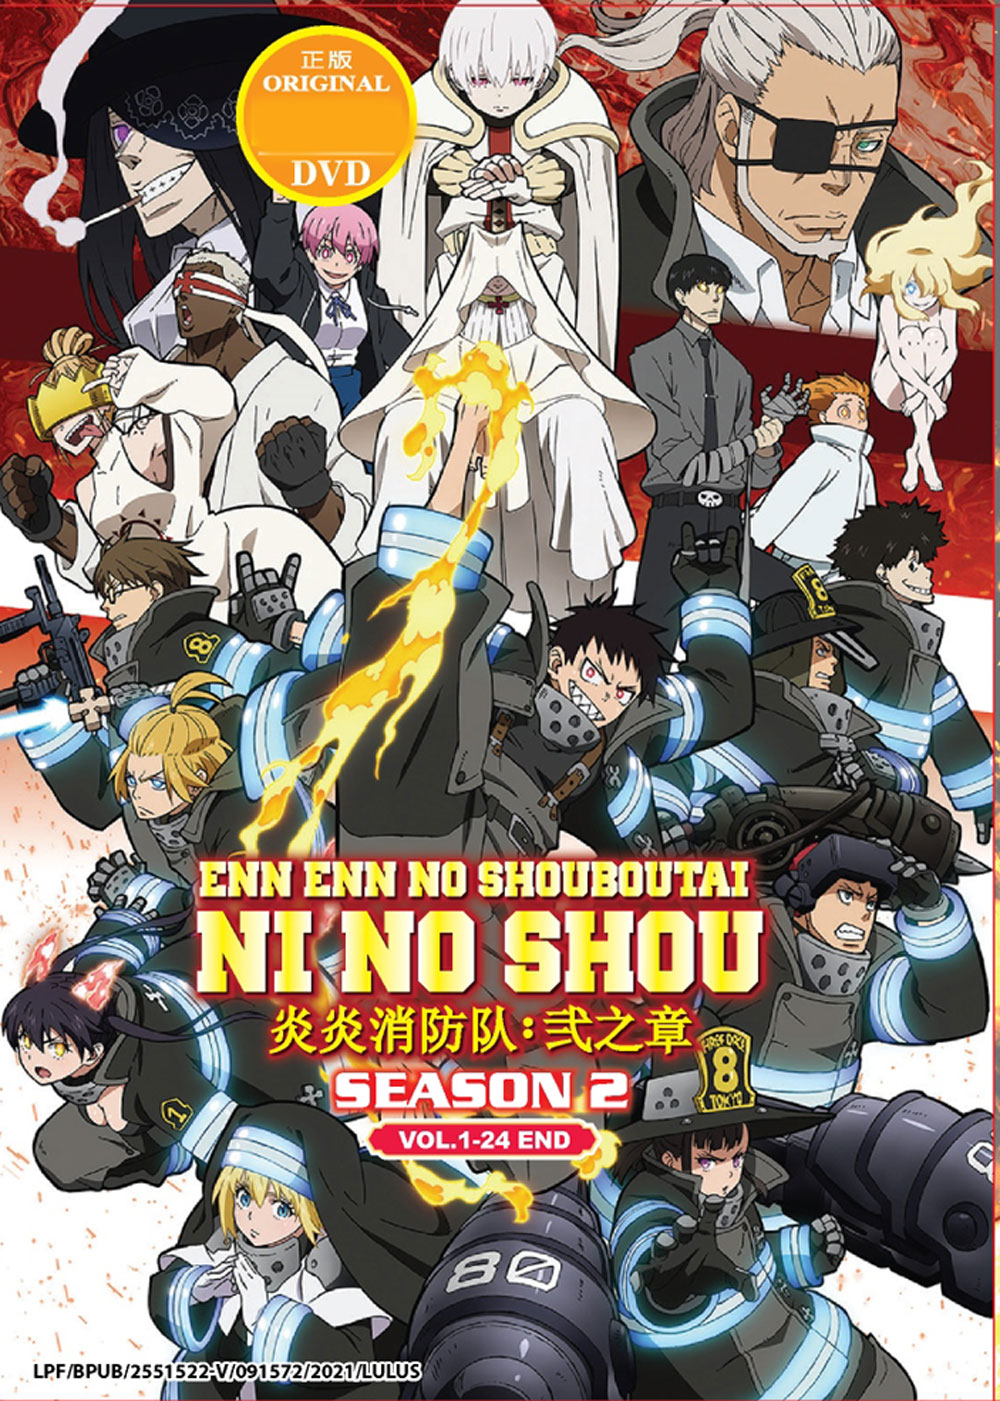 Enen no Shouboutai: Ni no Shou (Fire Force Season 2) 